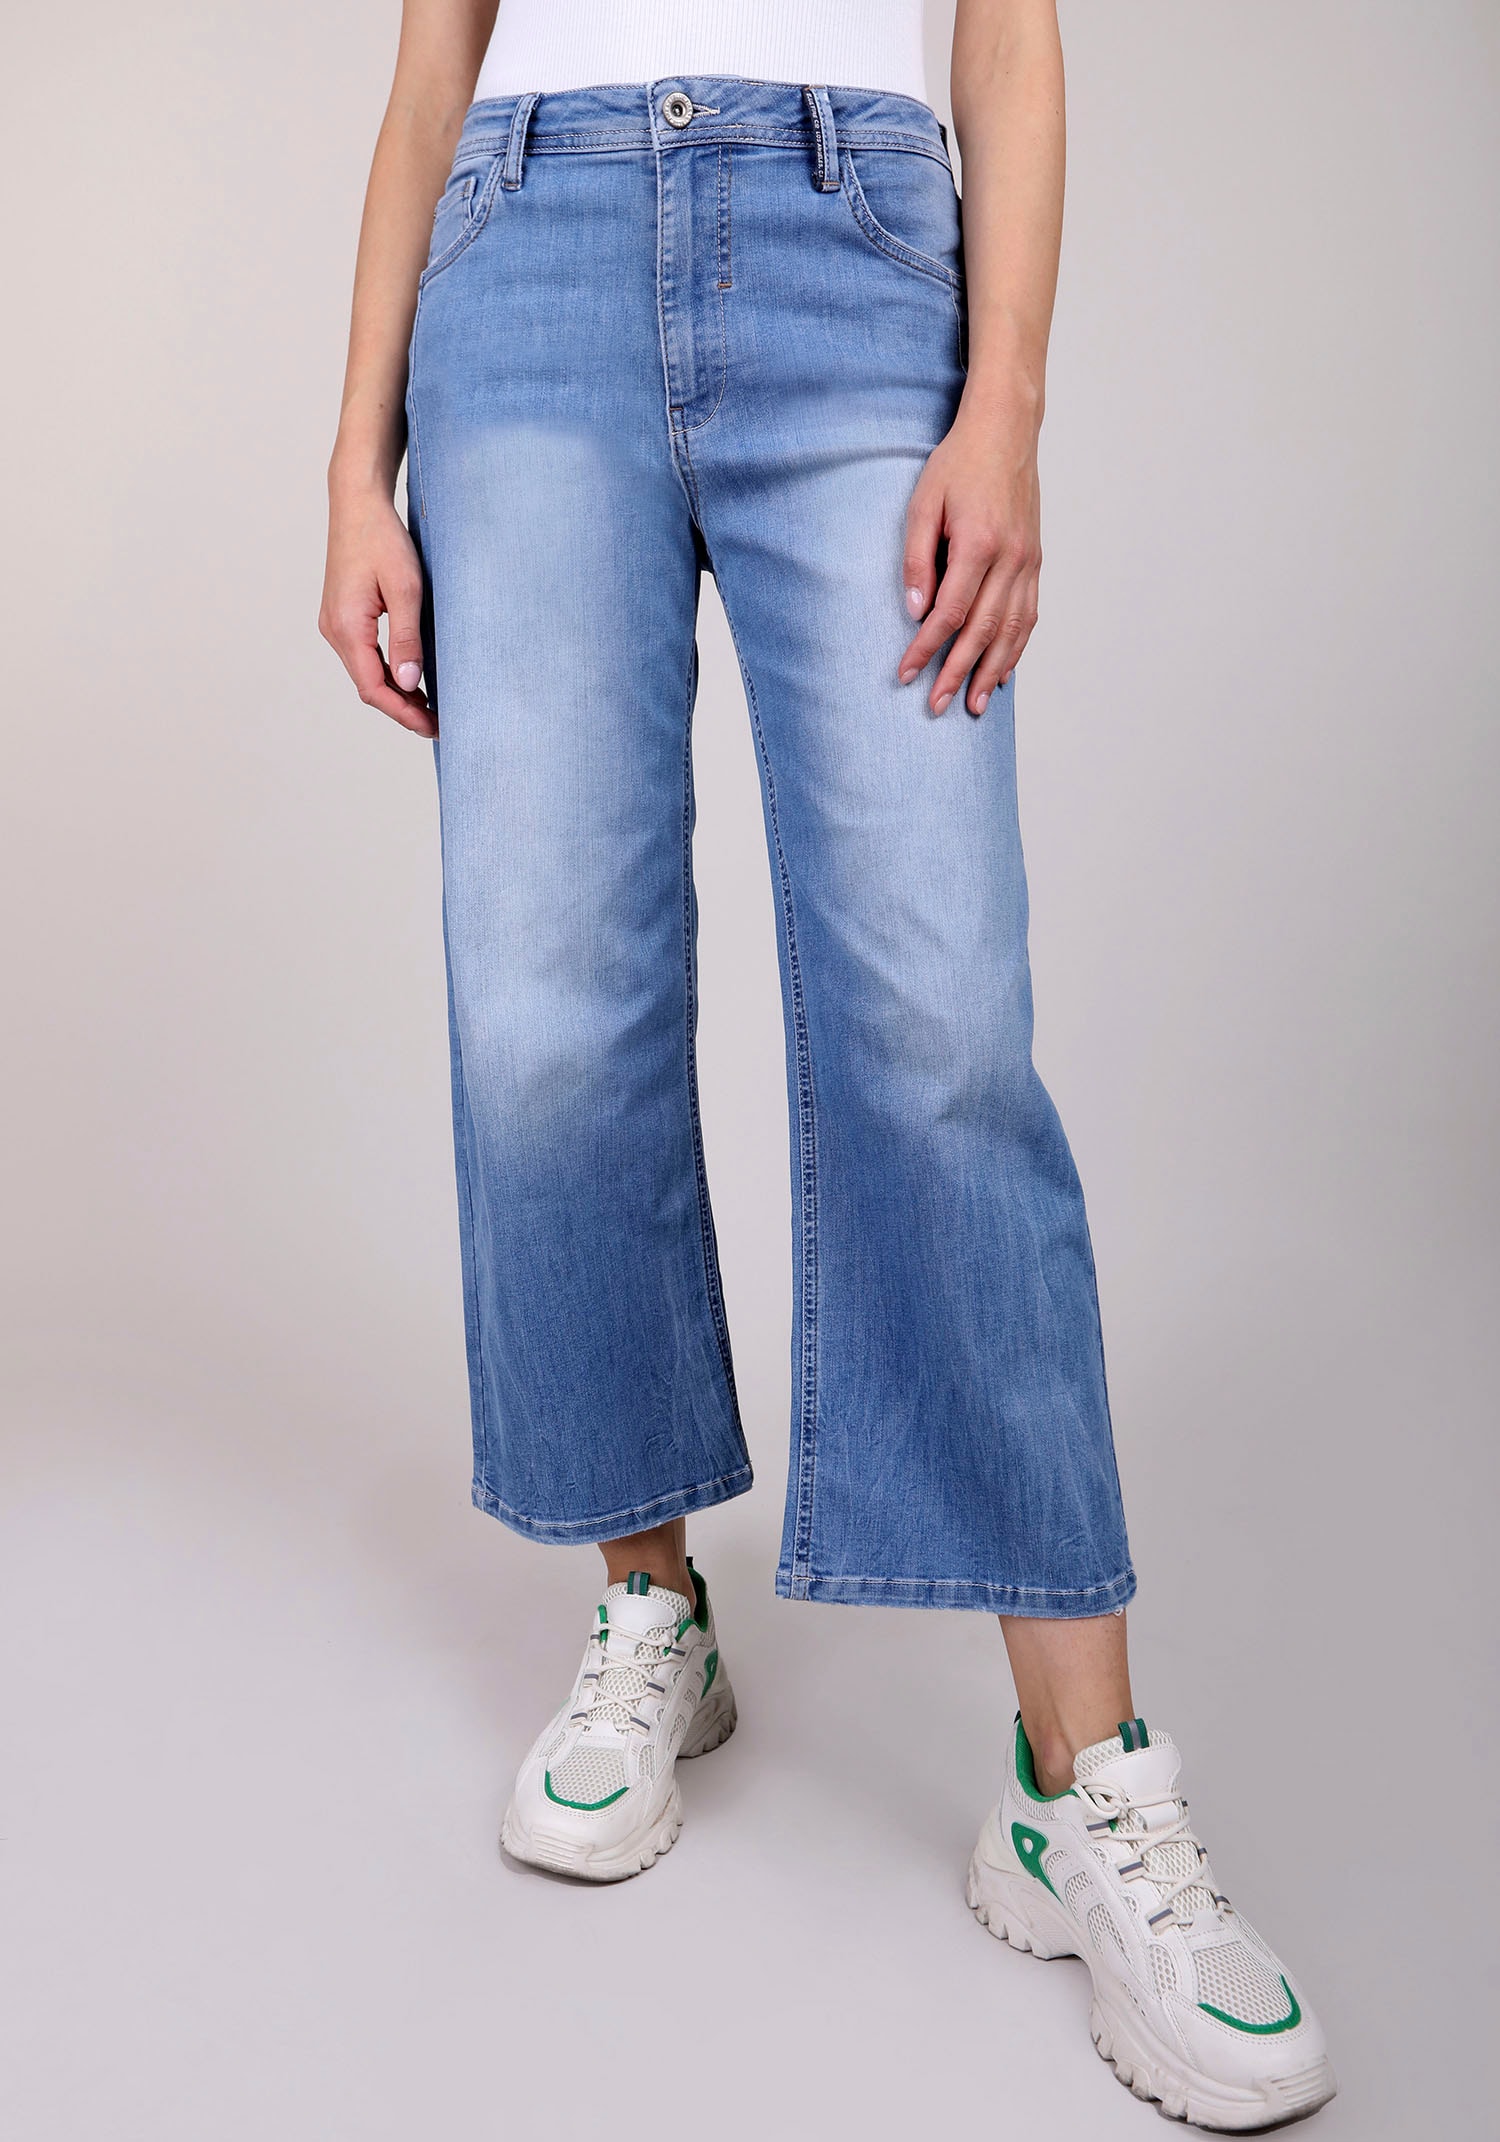 Weite Jeans »JUDY«, in Länge 32 mit Elasthan für Bequemlichkeit